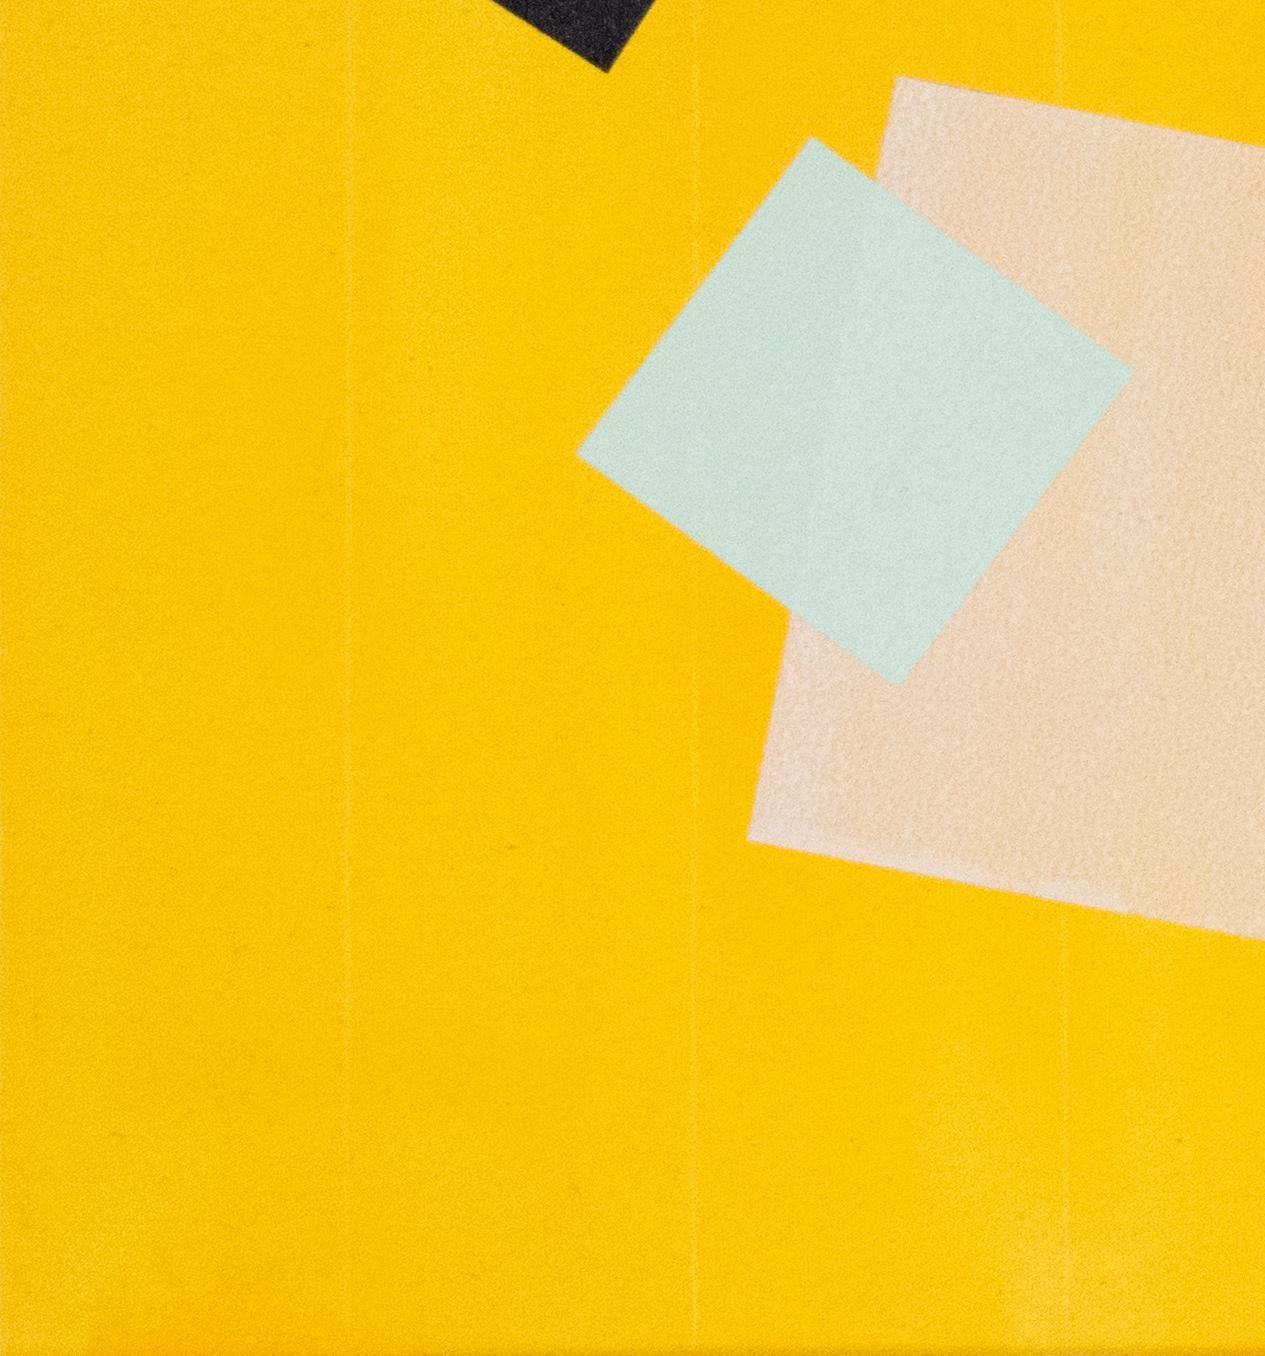 Grid Play - orange, gris, vert, géométrique abstrait, acrylique sur toile - Painting de Milly Ristvedt